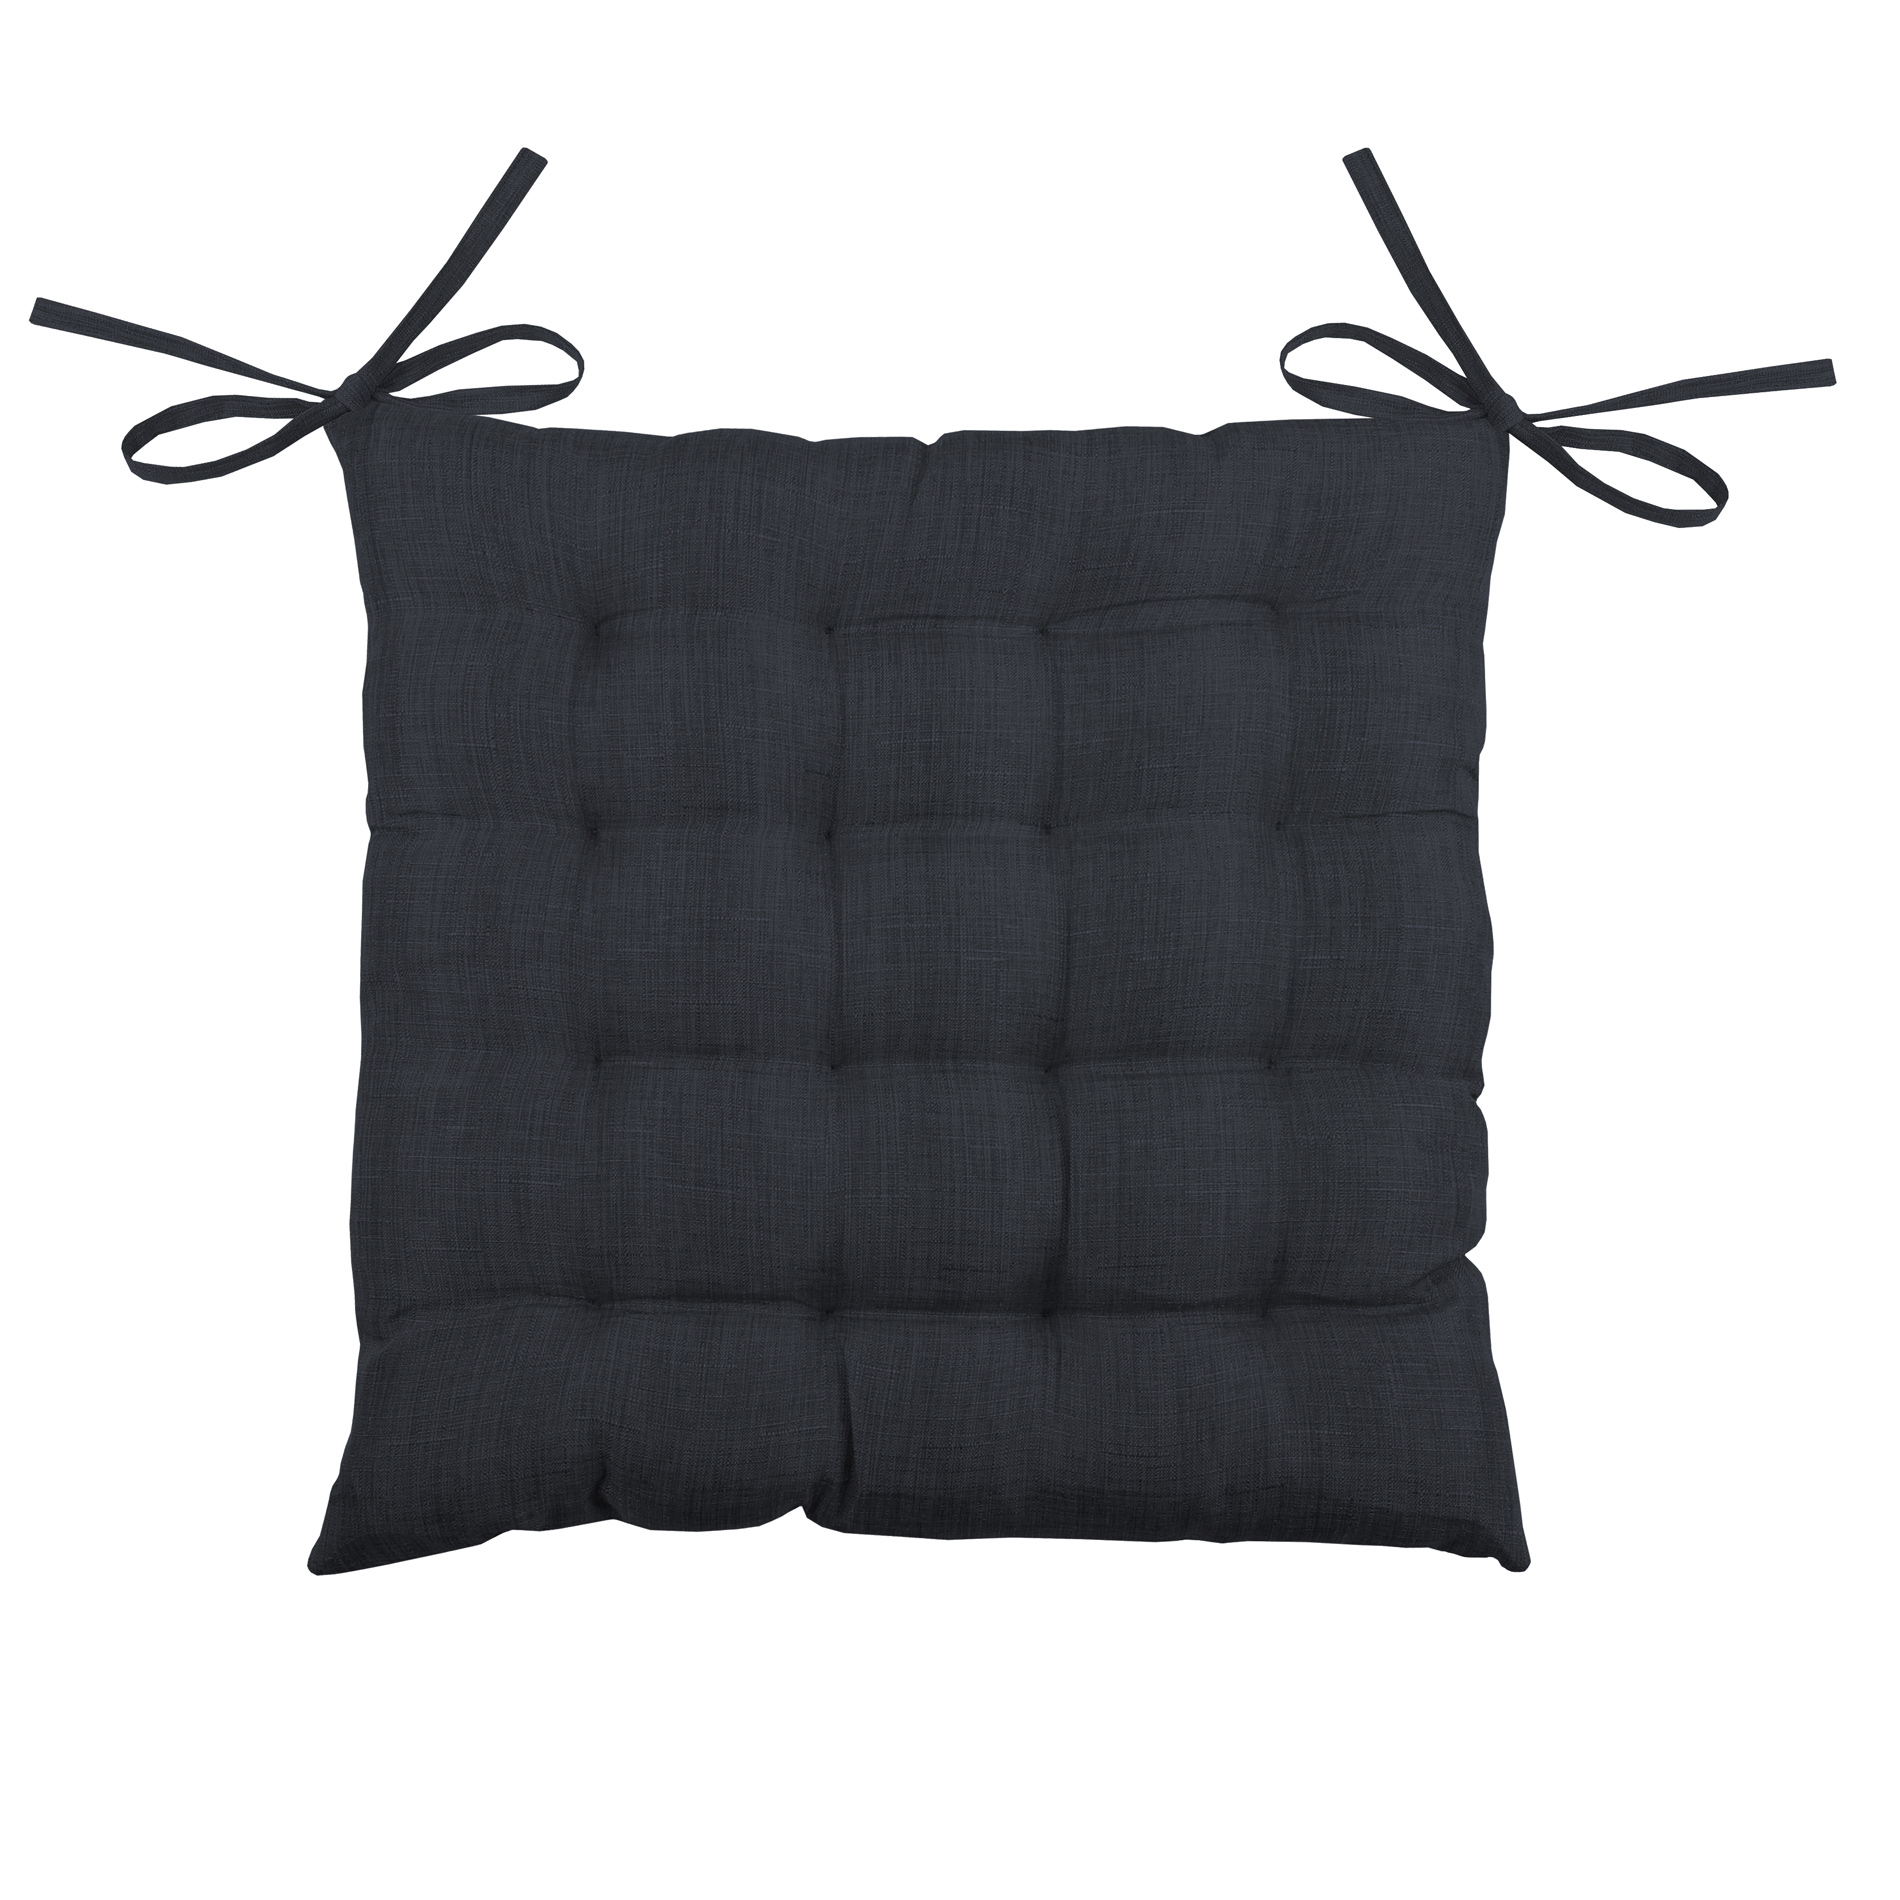 Cojín para silla Bea 16 puntos Carbón - Decoración textil - Eminza